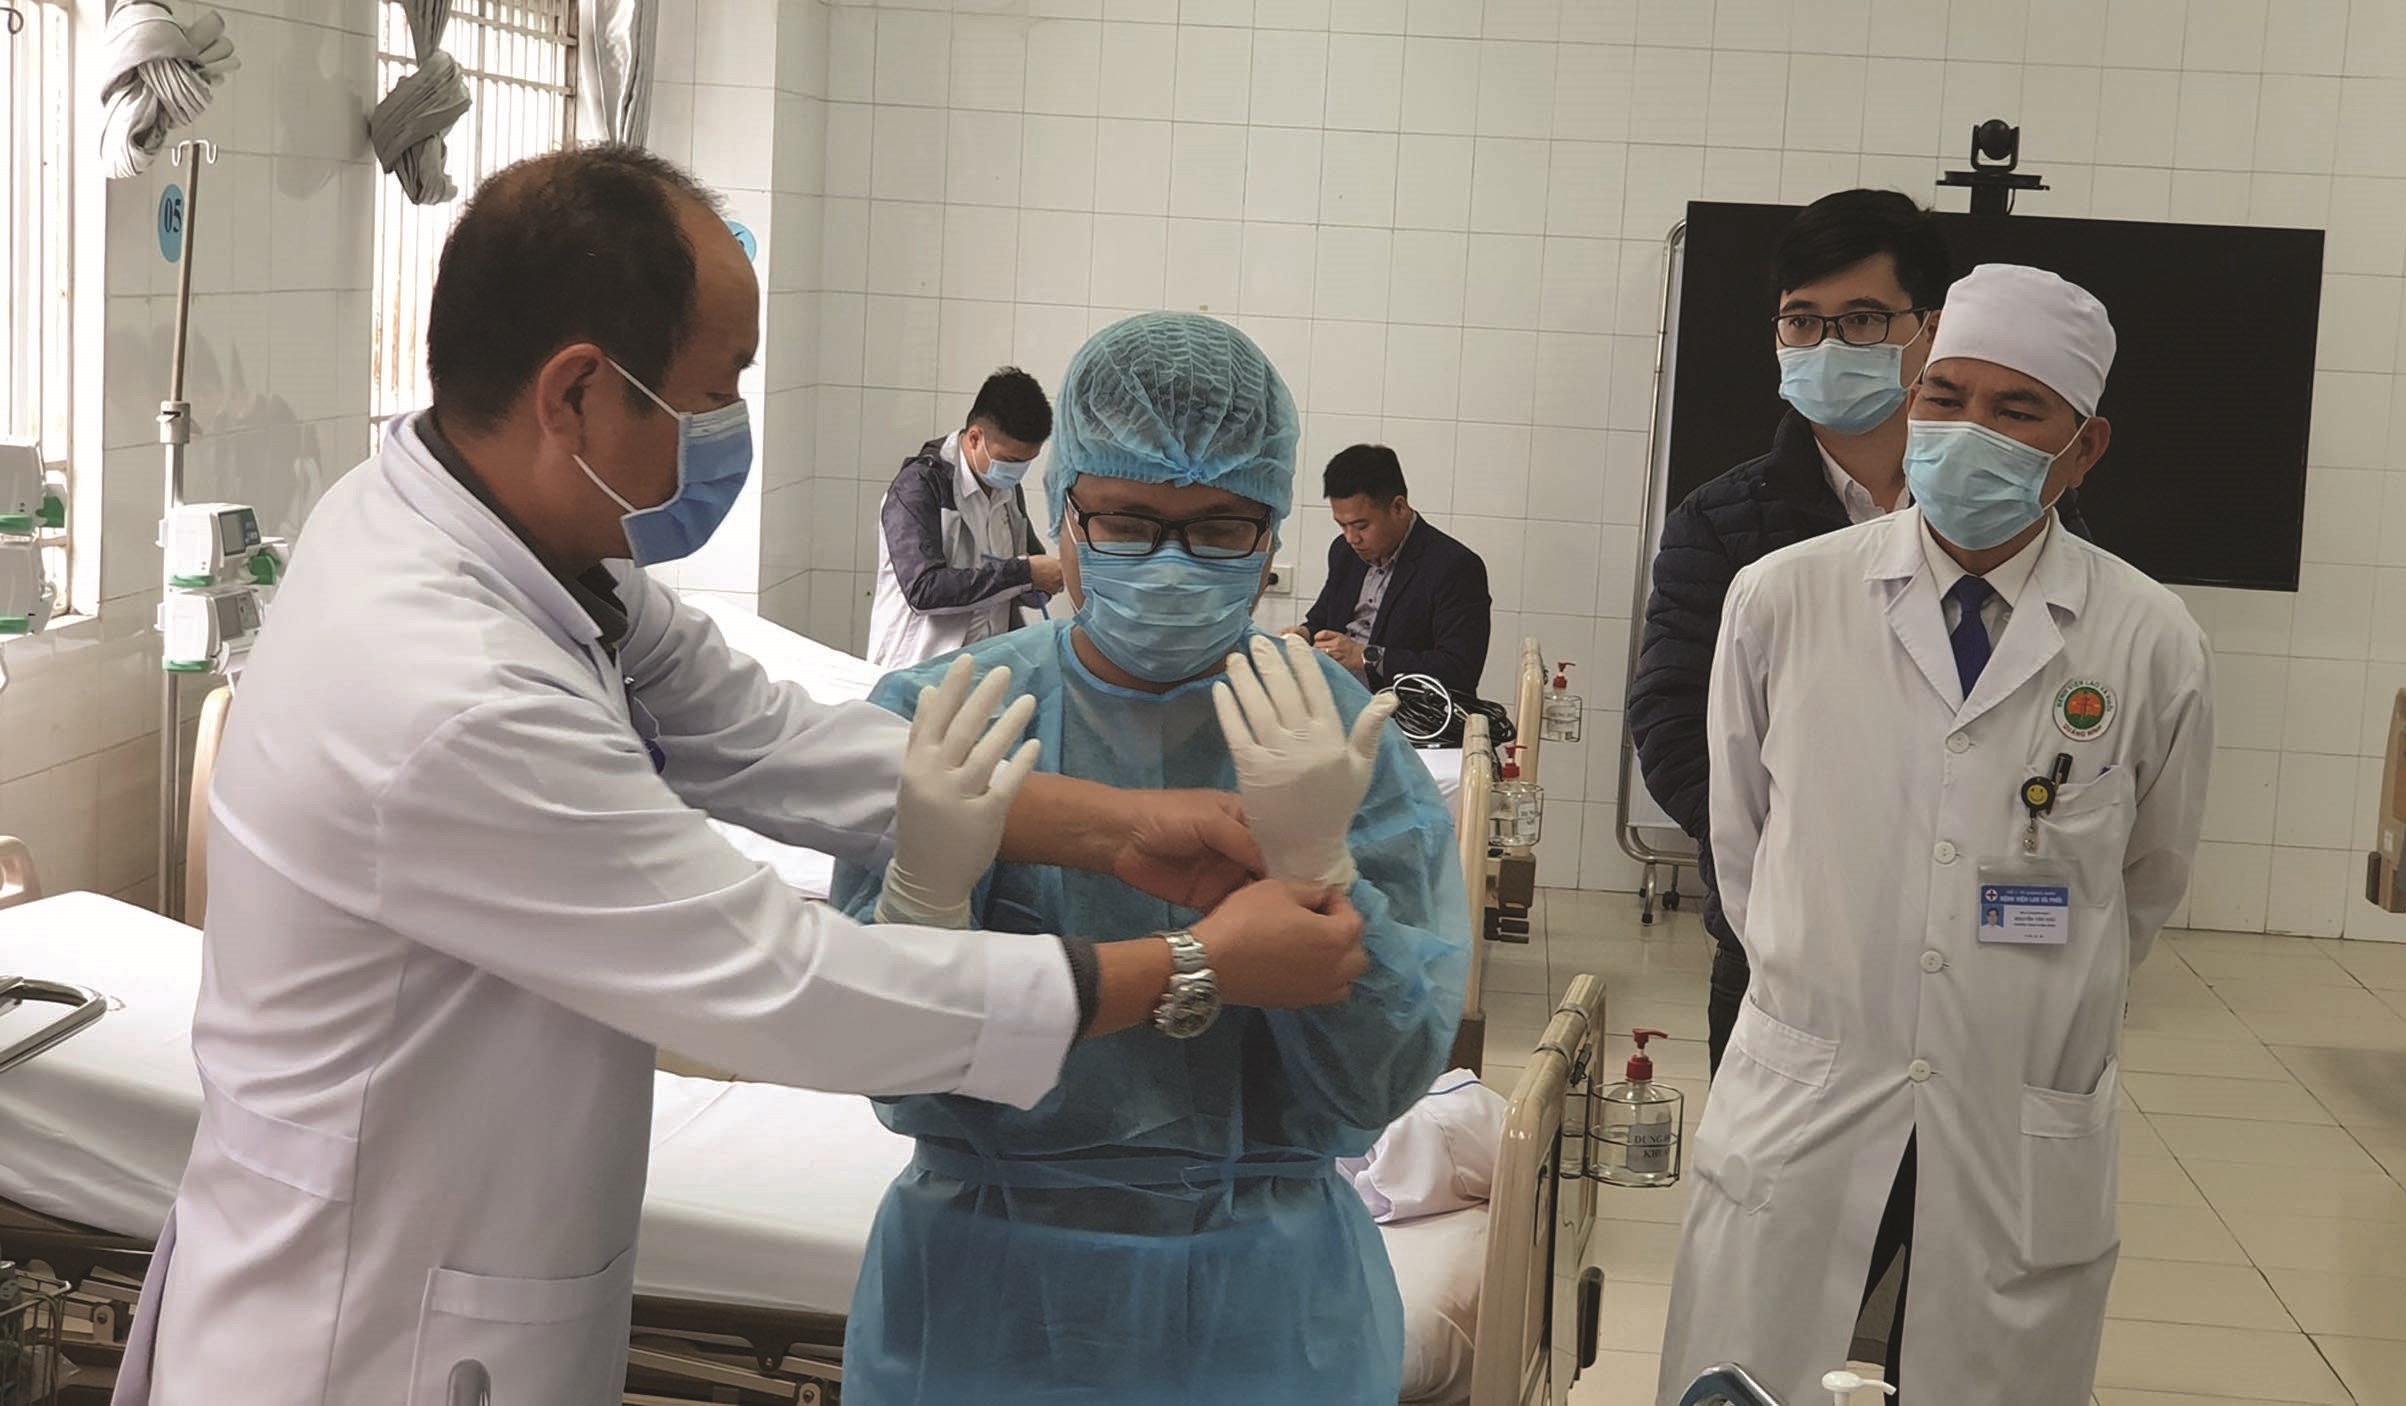 Bác sĩ Nguyễn Quốc Hùng Giám đốc Bệnh viện dã chiến số 2, tỉnh Quảng Ninh hướng dẫn nhân viên y tế xử lý tình huống tại Bệnh viện dã chiến